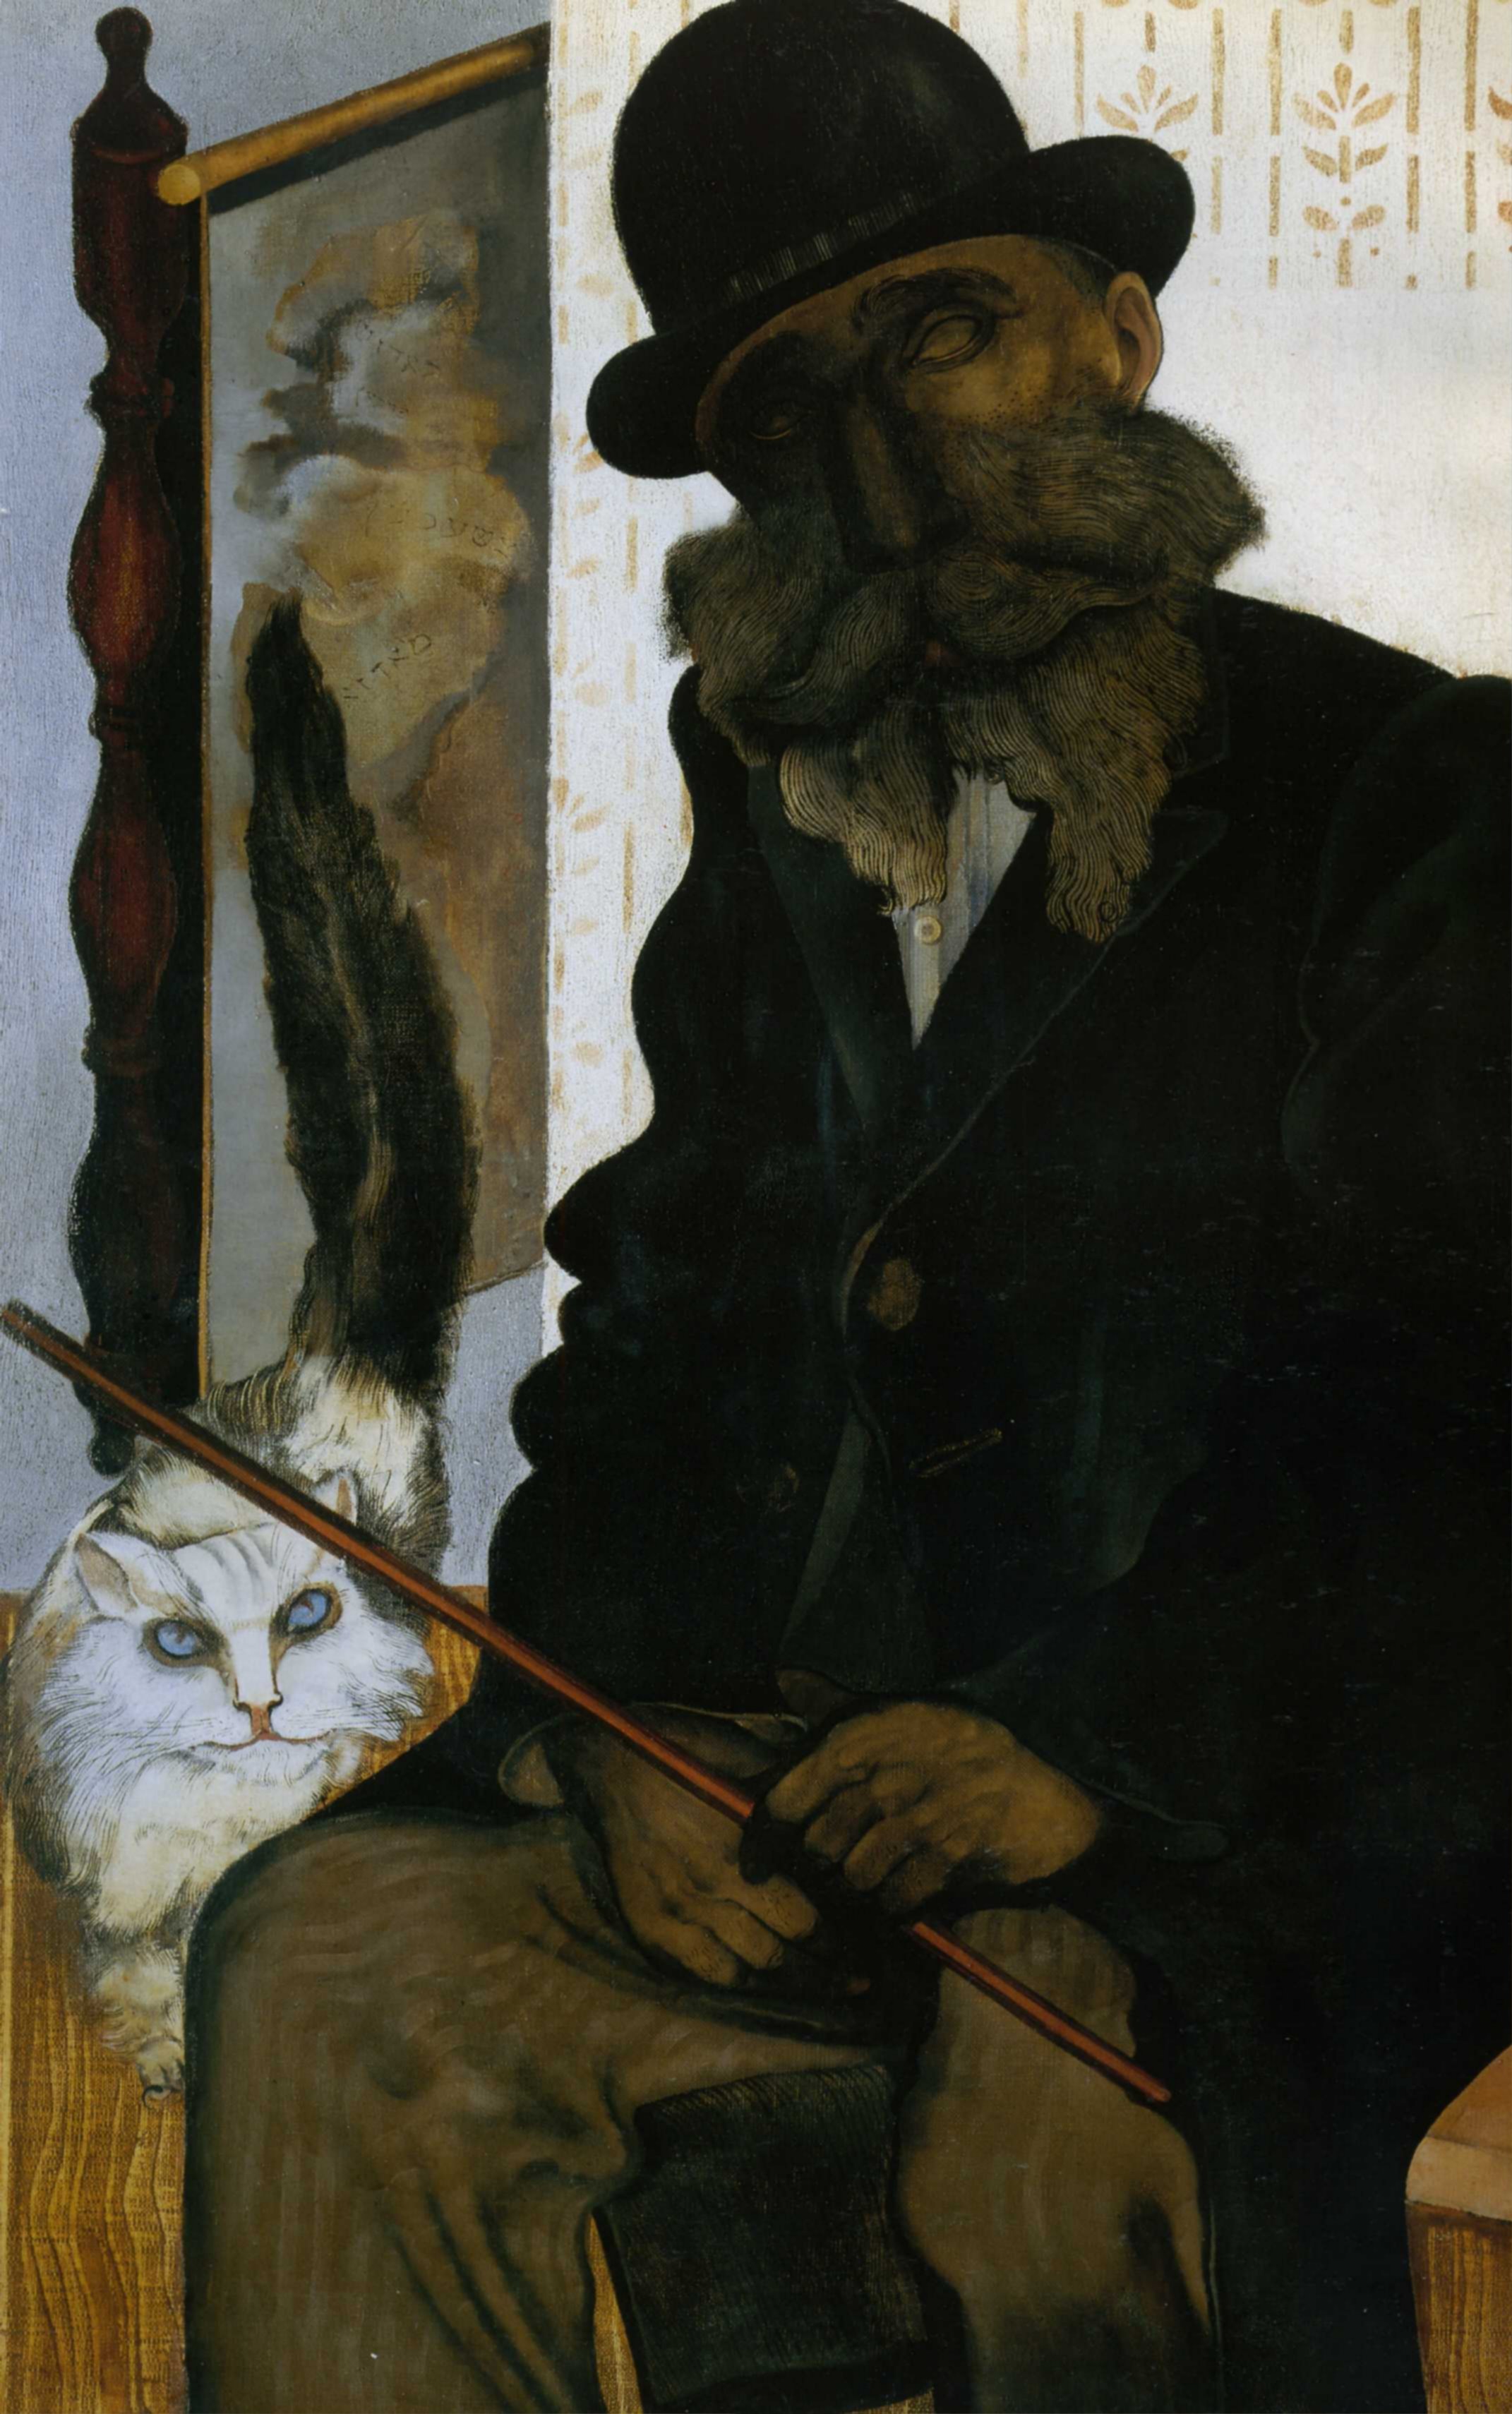 1925 Jankel Adler Cleron - The cat breeder